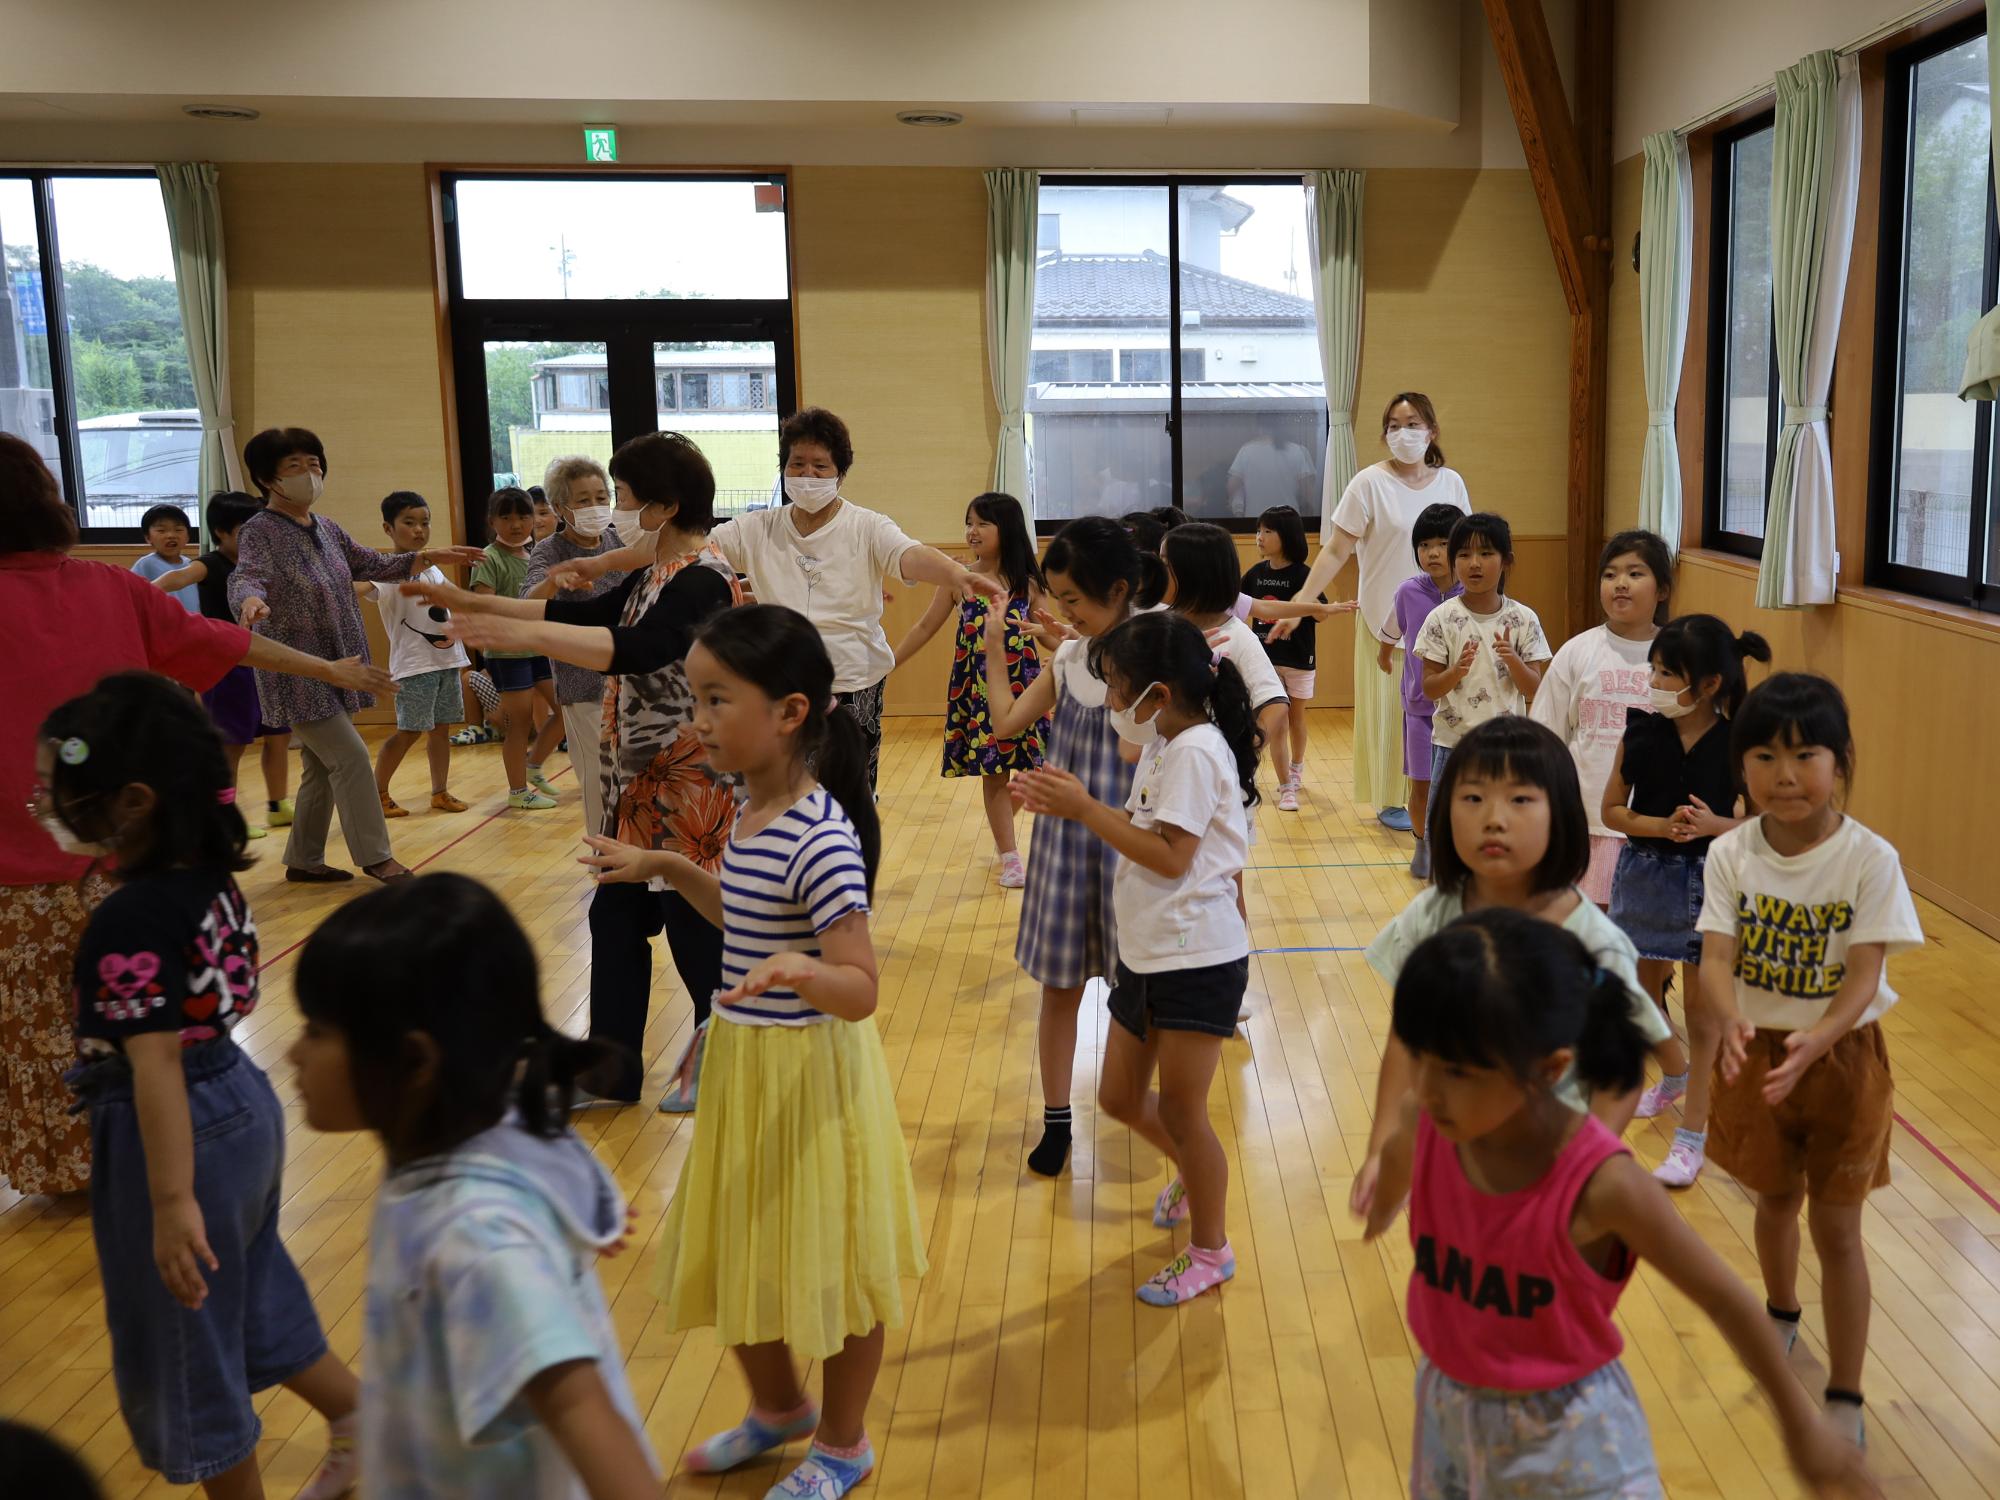 東部子ども公民館で世代間交流として盆踊りをする様子